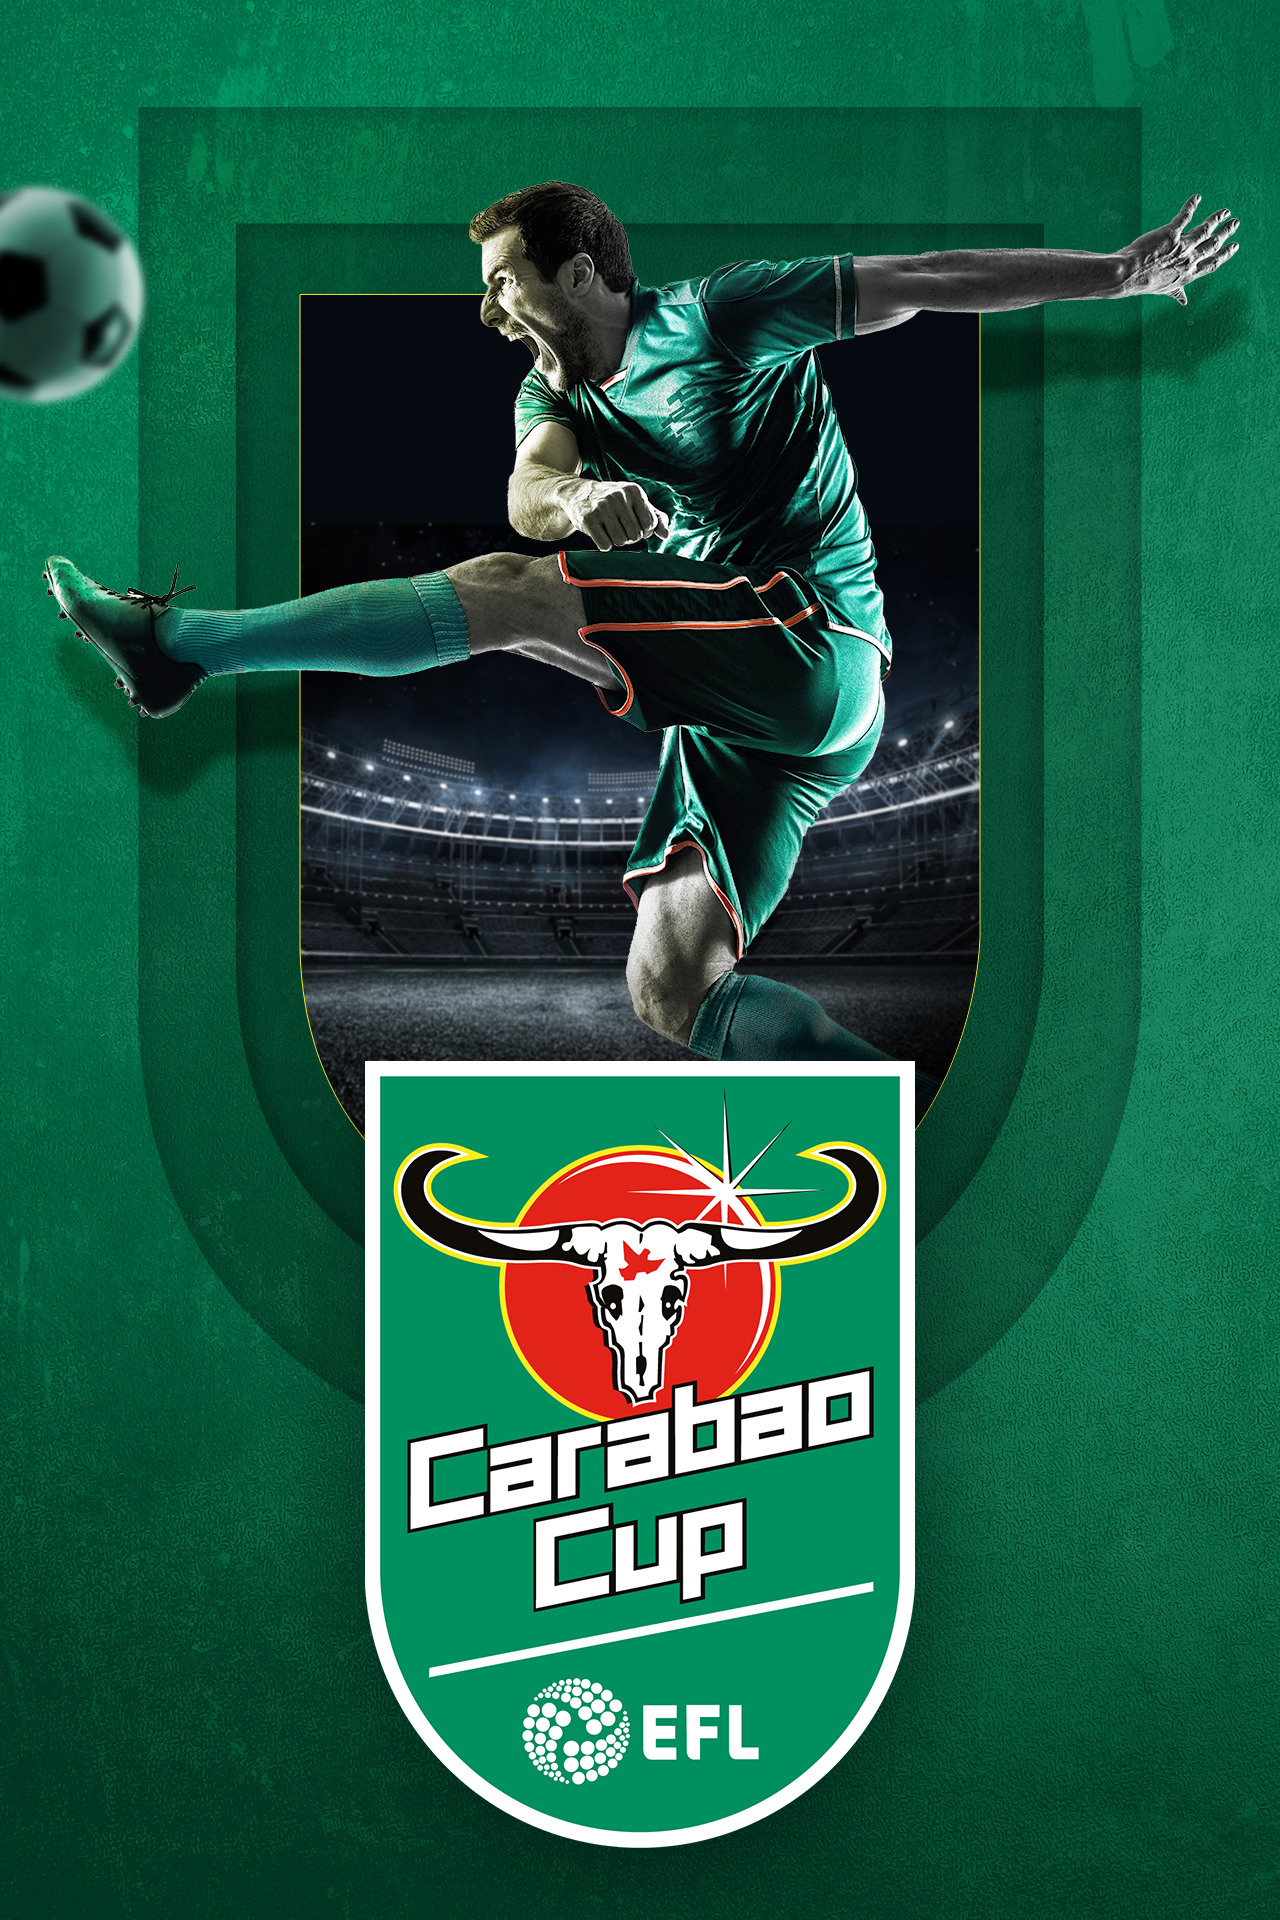 Carabao Cup 2023